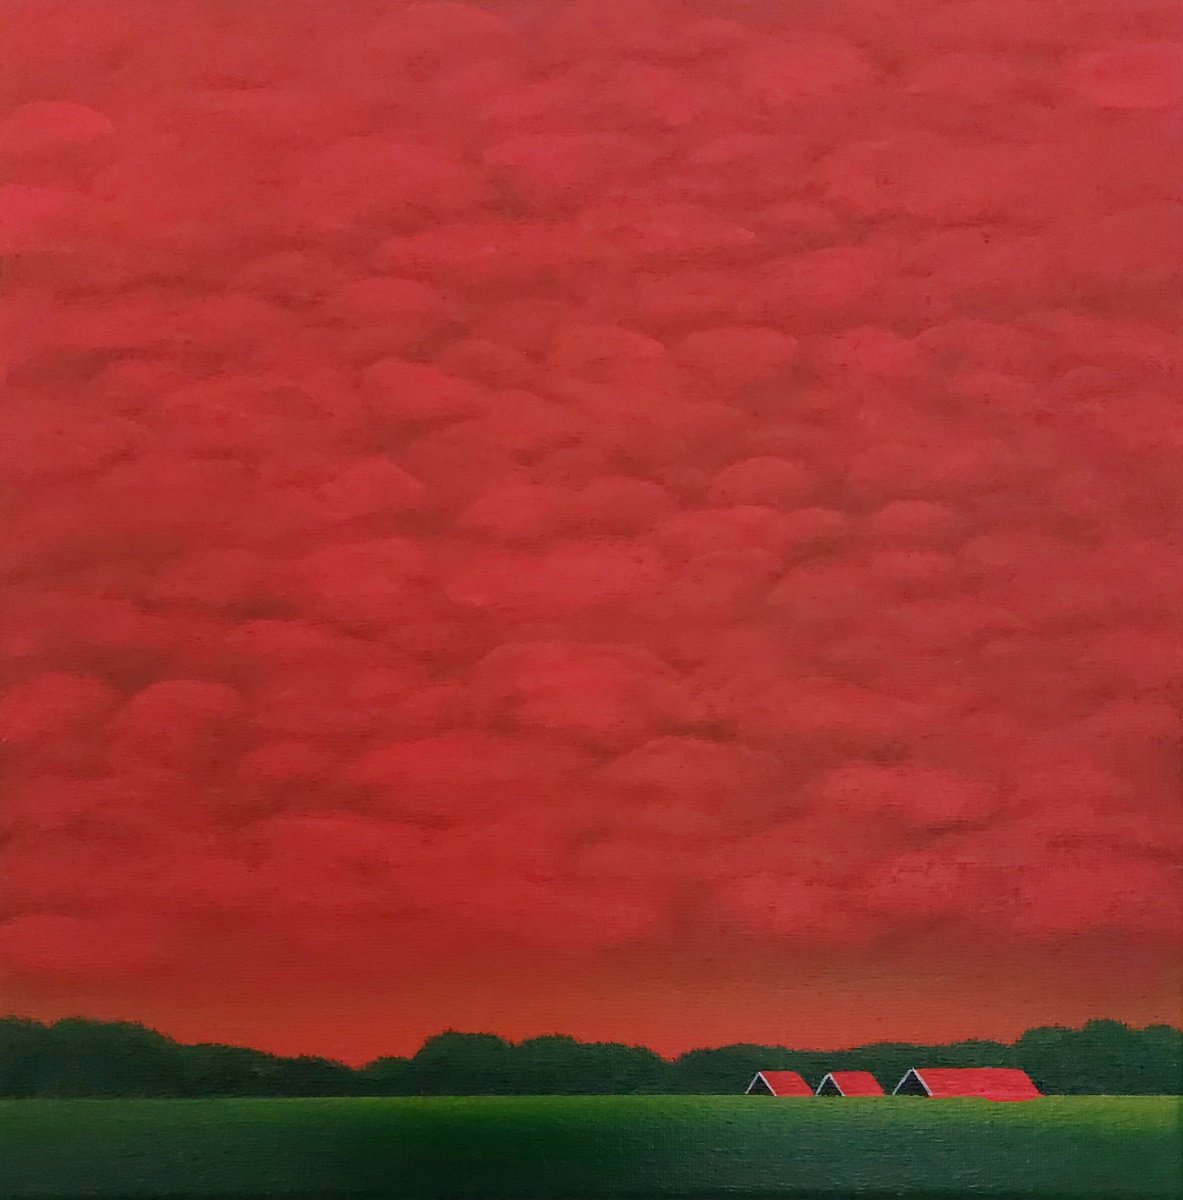 Glowing Sunset (02) by Nelly van Nieuwenhuijzen